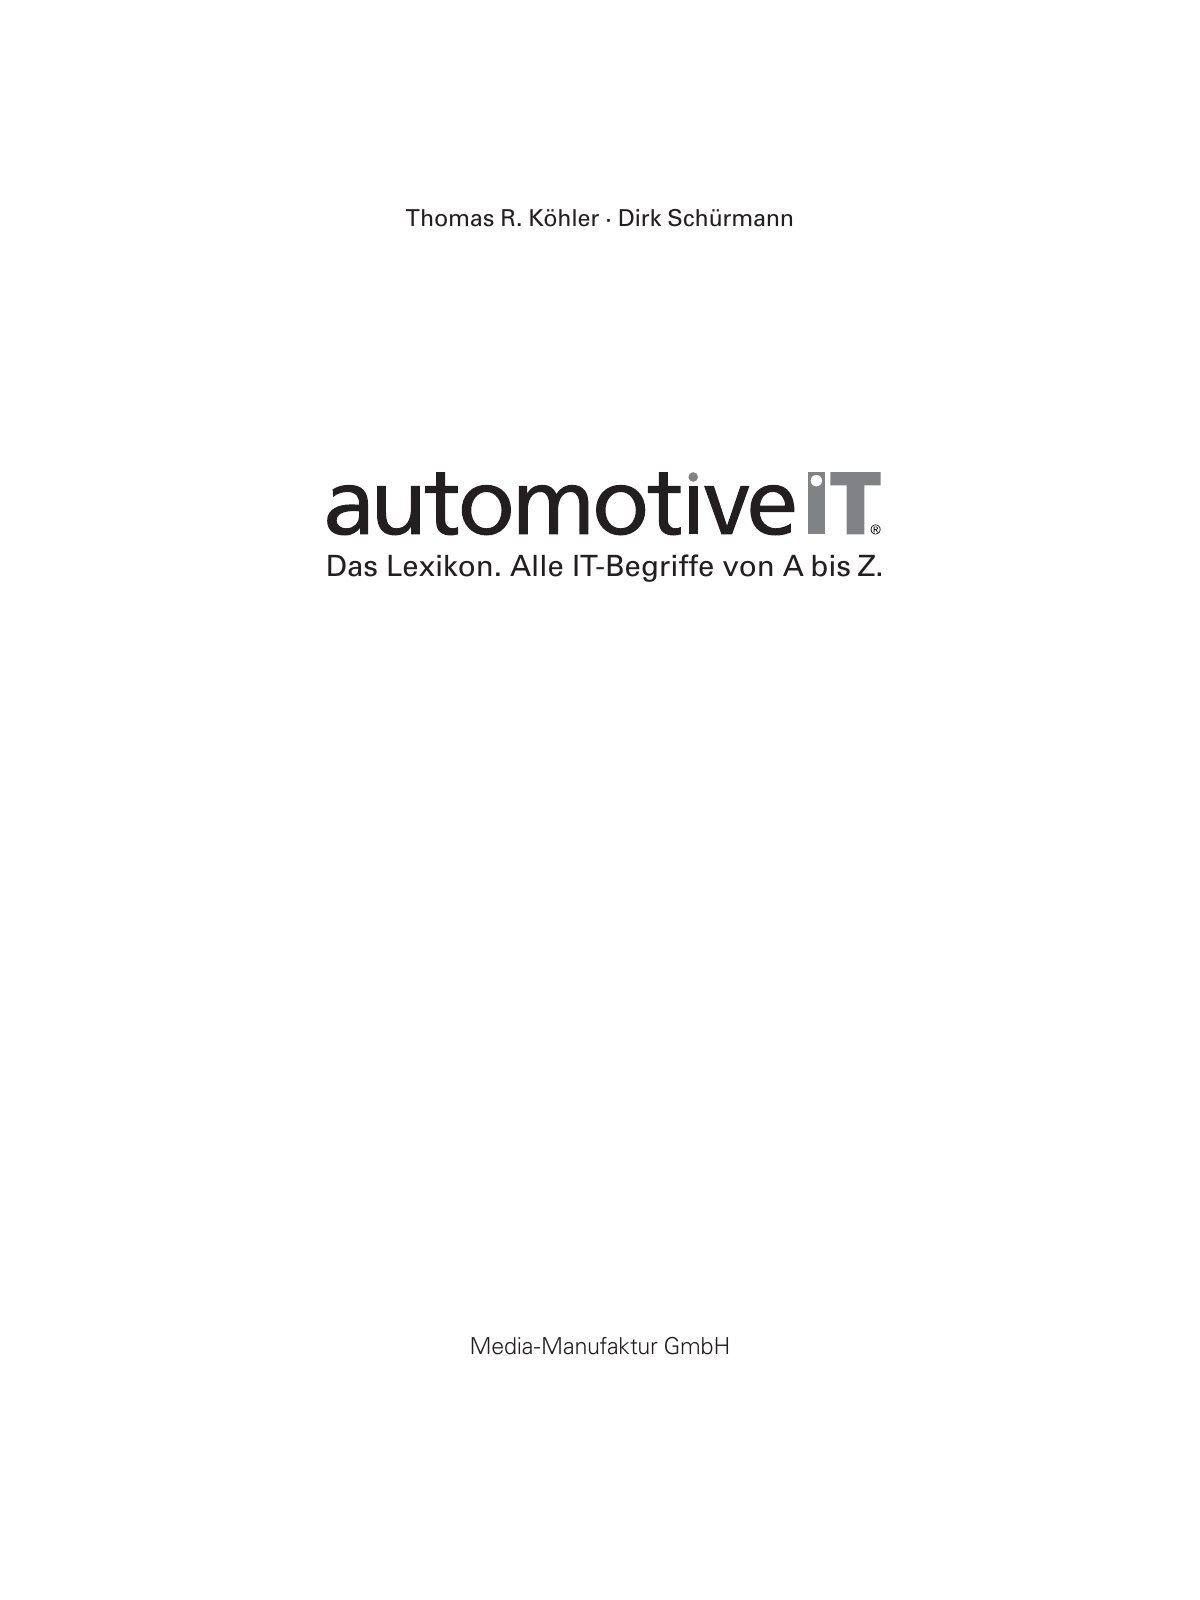 Vorschau automotiveIT Das Lexikon. Leseprobe Seite 2